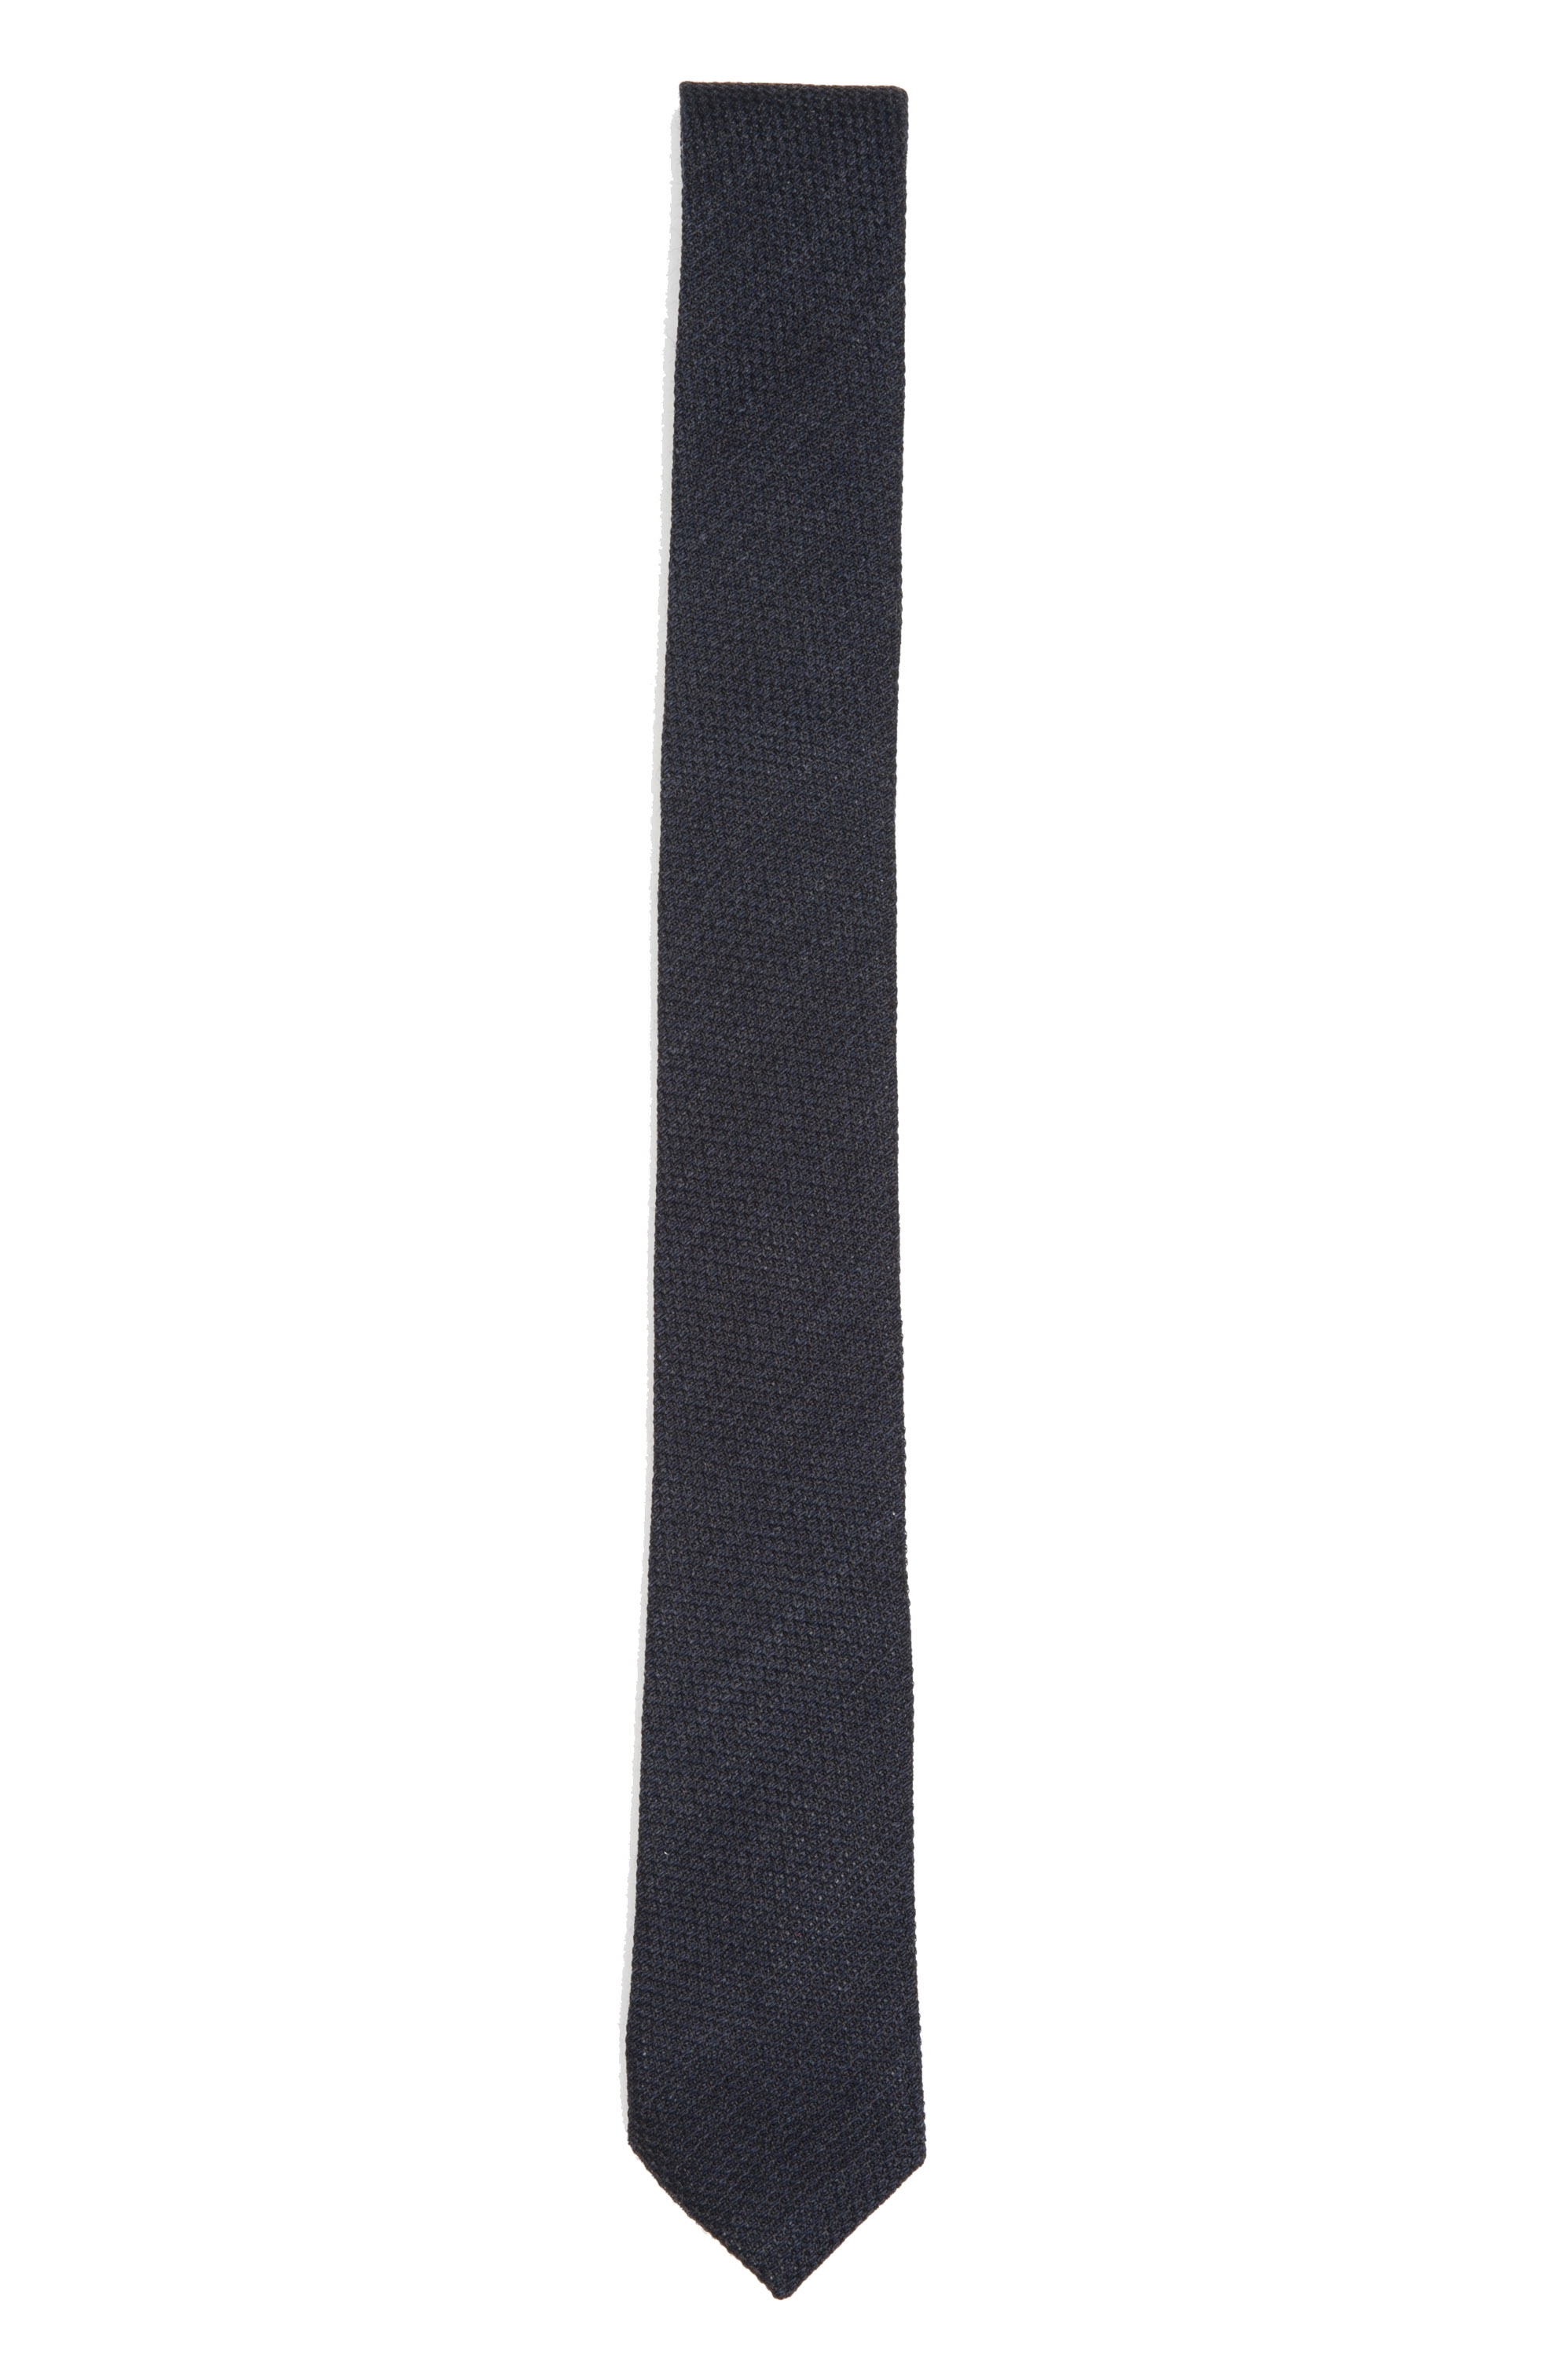 SBU 01569 Corbata clásica de punta fina en lana y seda negra 01